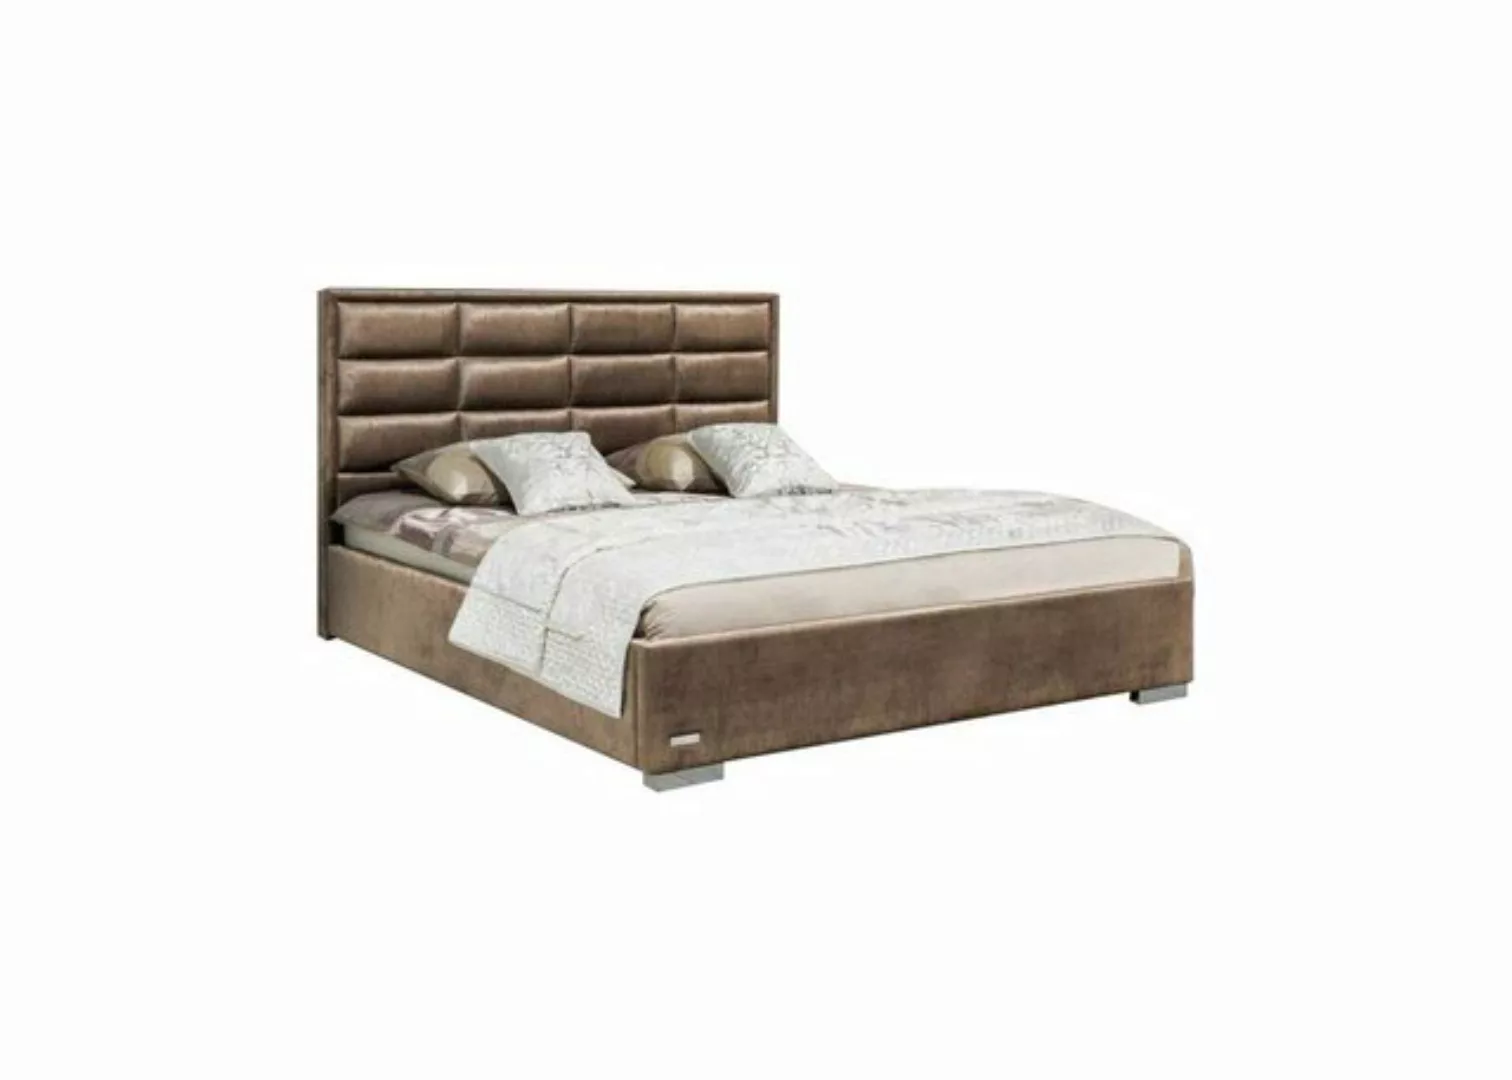 JVmoebel Bett, Bett Textil Schlafzimmer Design Möbel Moderne Luxus Betten günstig online kaufen